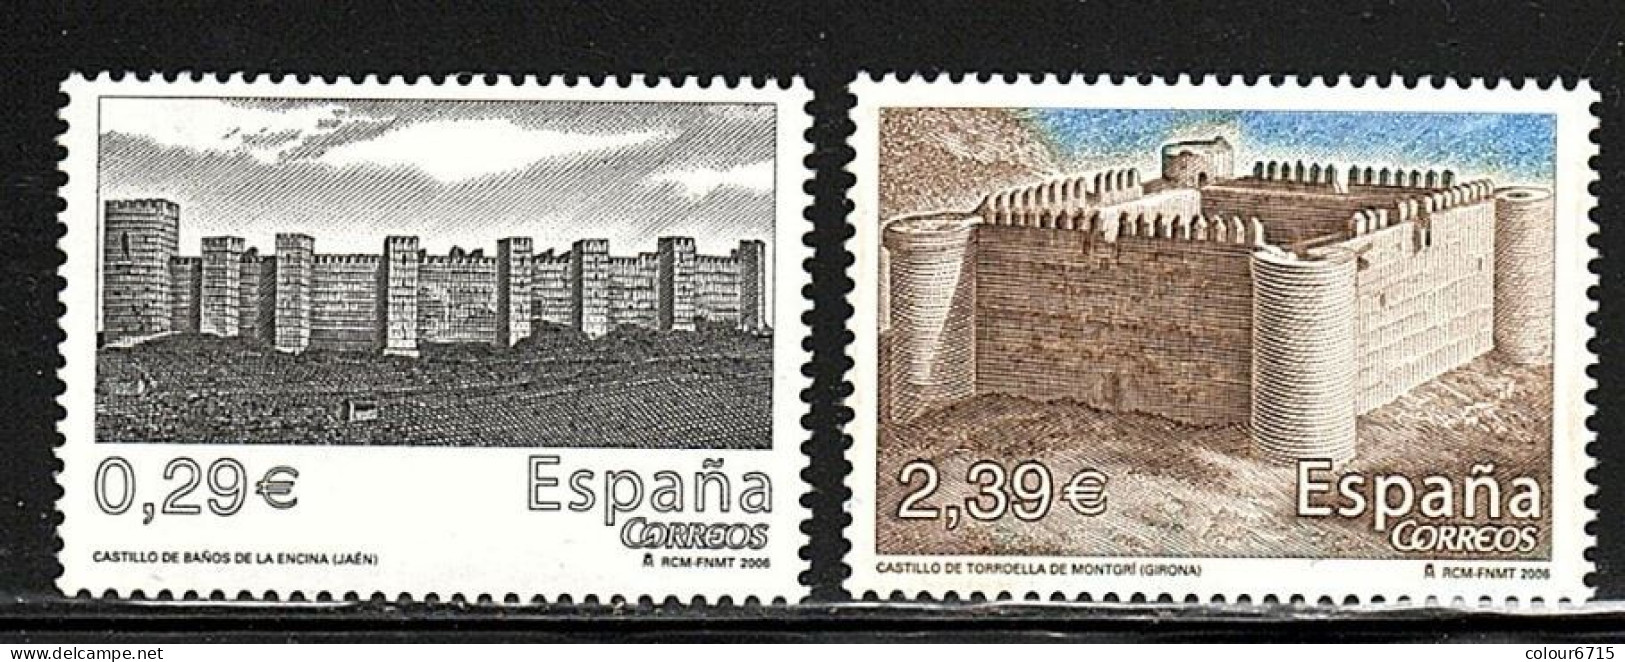 Spain 2006 Castles Stamps 2v MNH - Unused Stamps